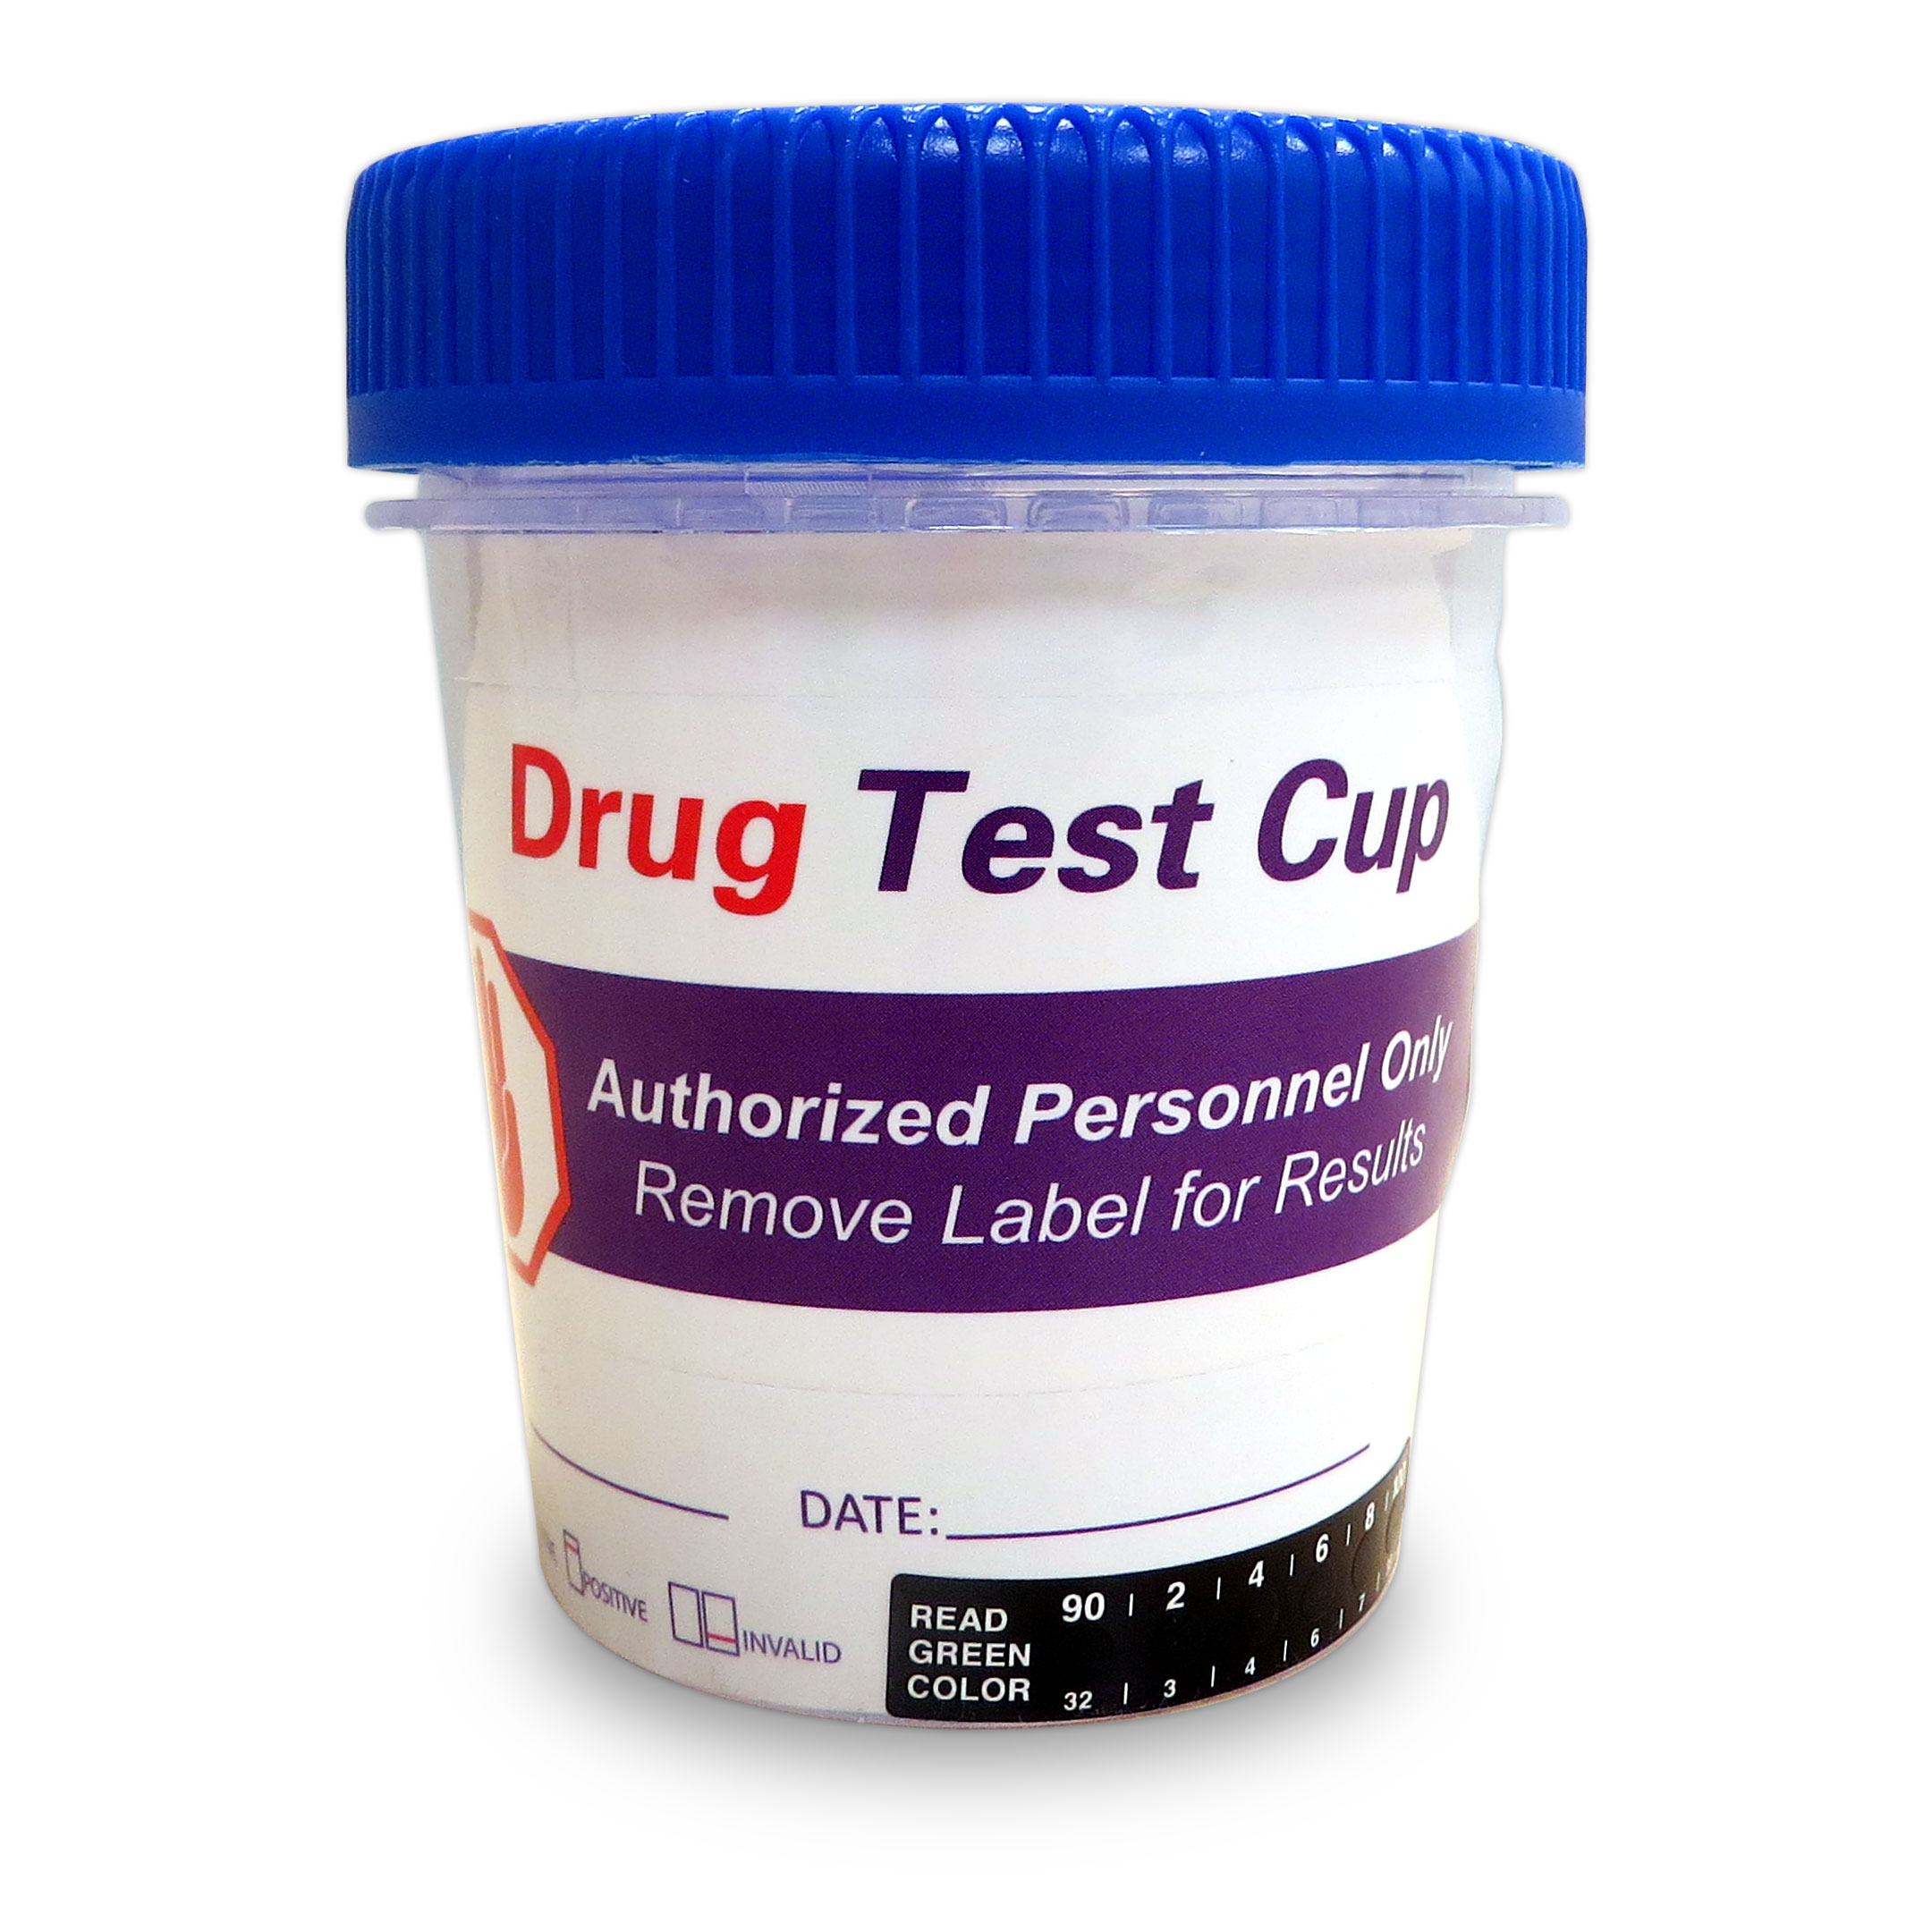 Drug Test Cup